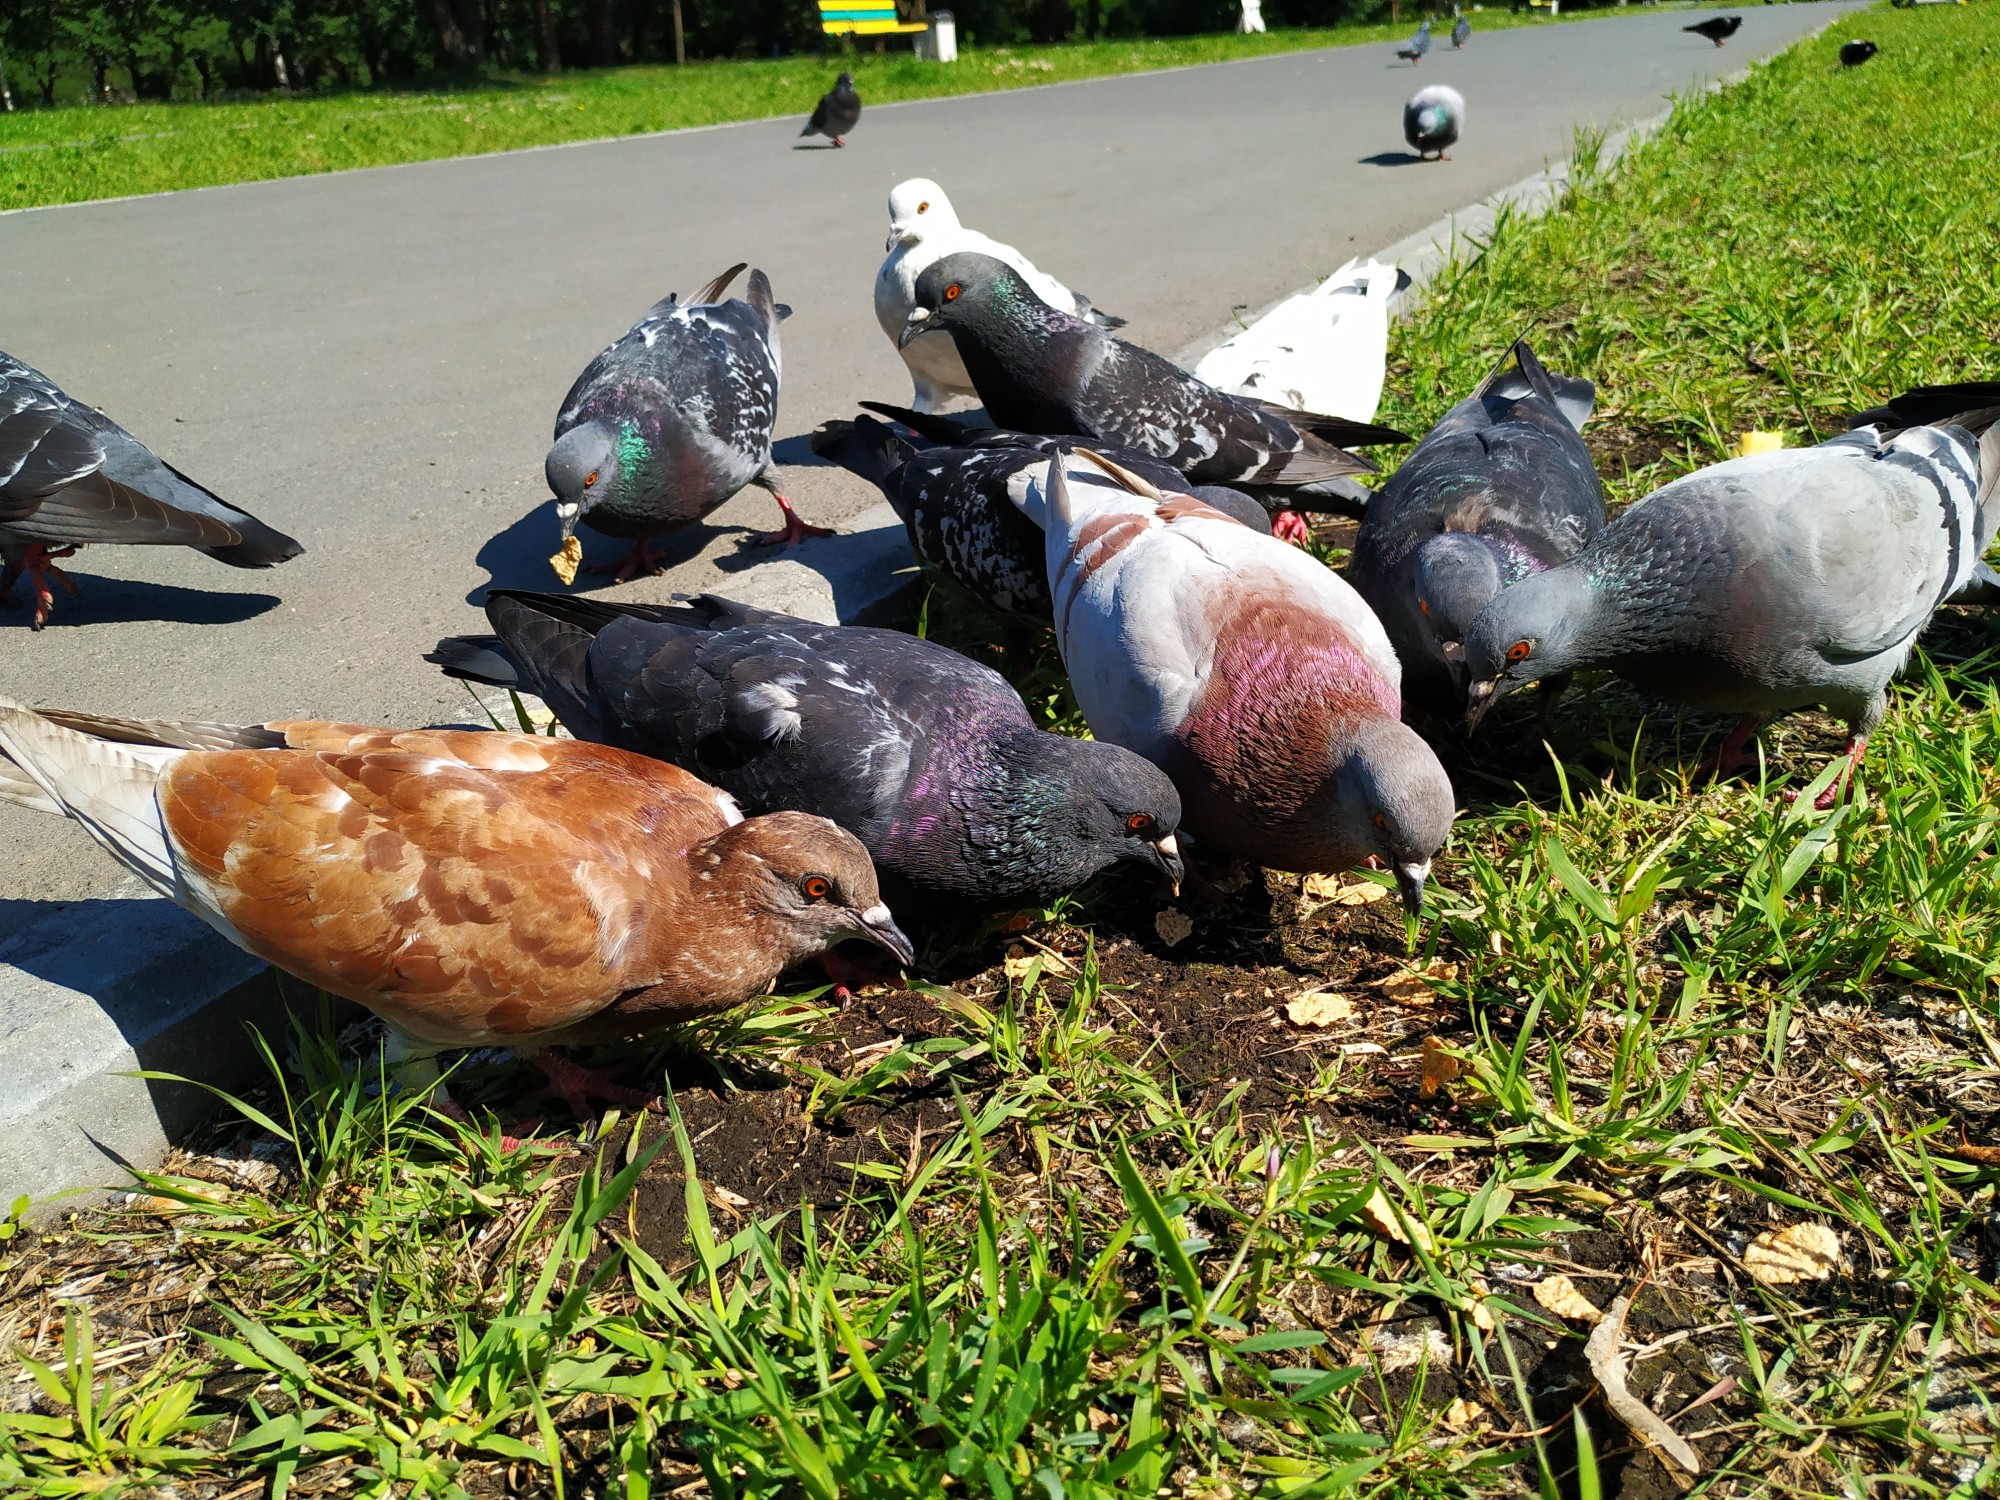 Tauben können eine regelrechte Plage sein. Foto: Tania_Vas via Twenty20